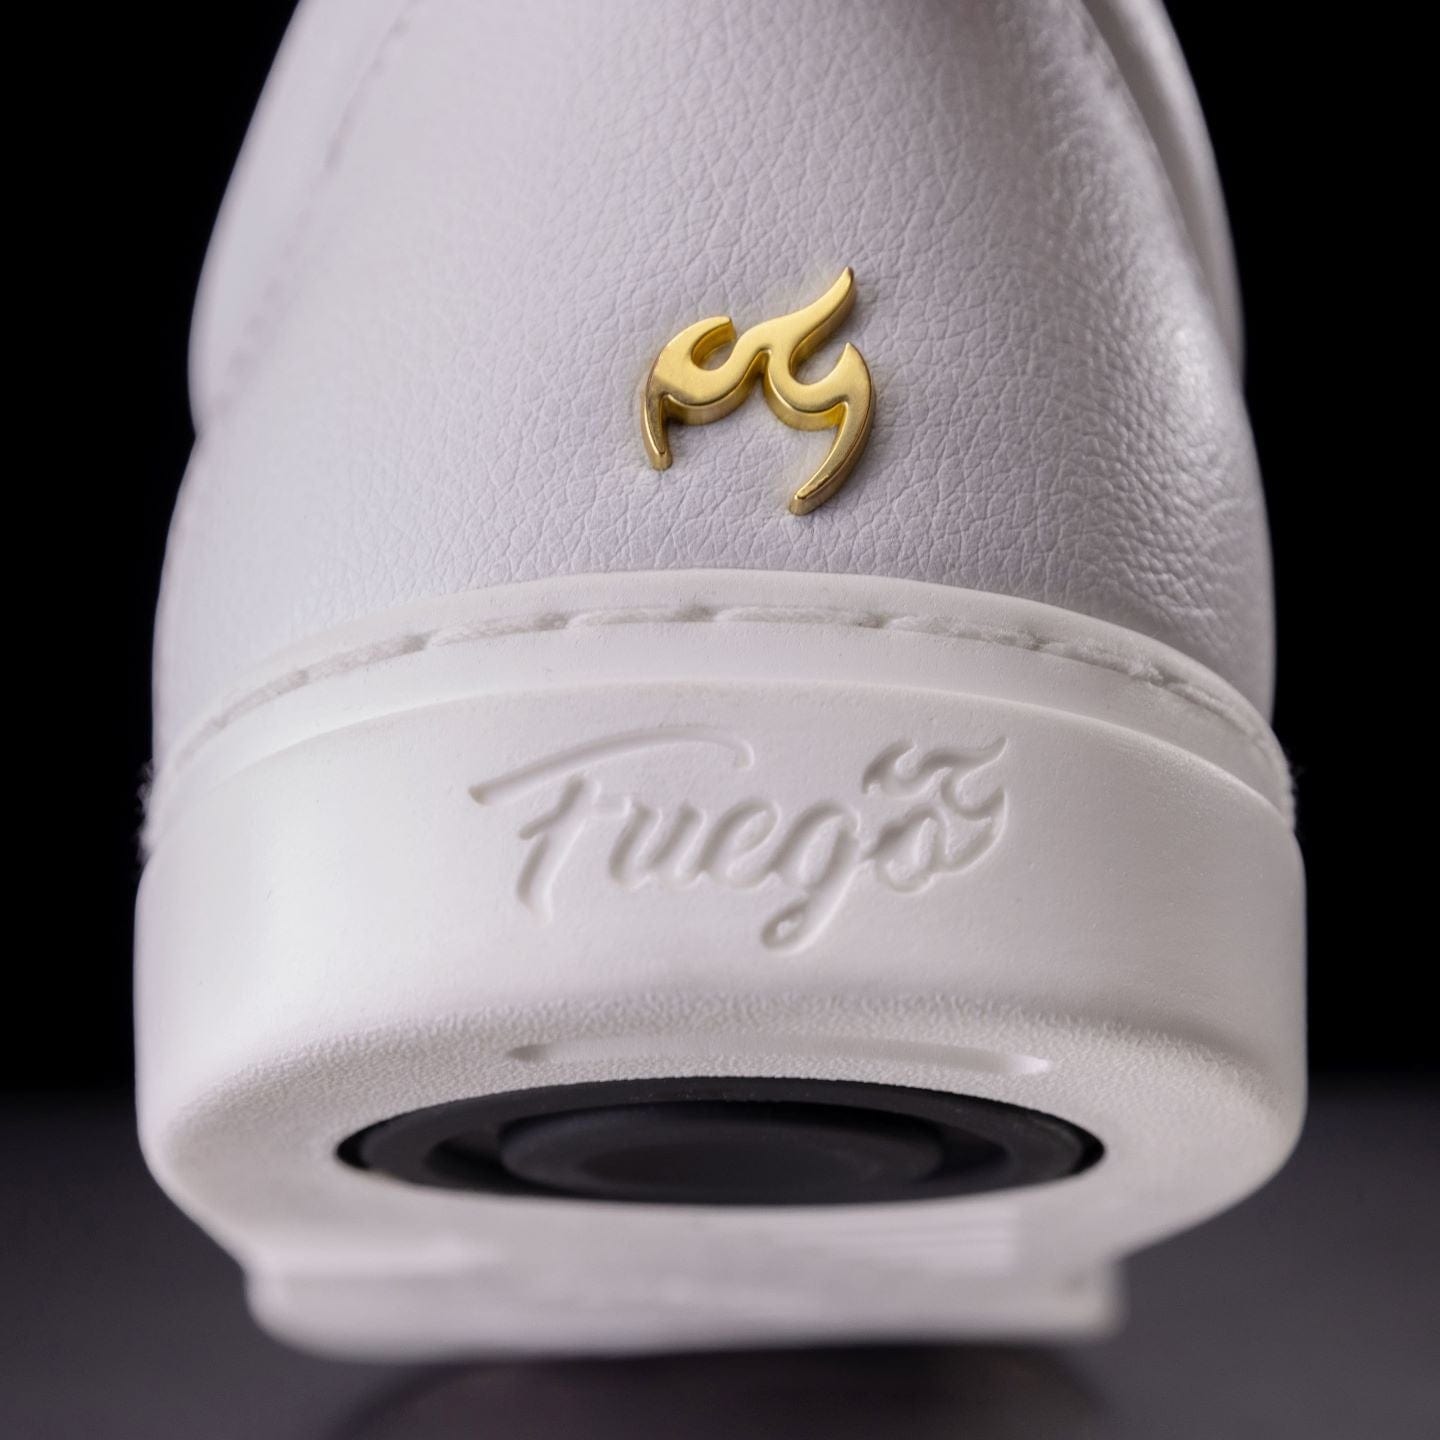 Louis Vuitton Men's High Top Shoes